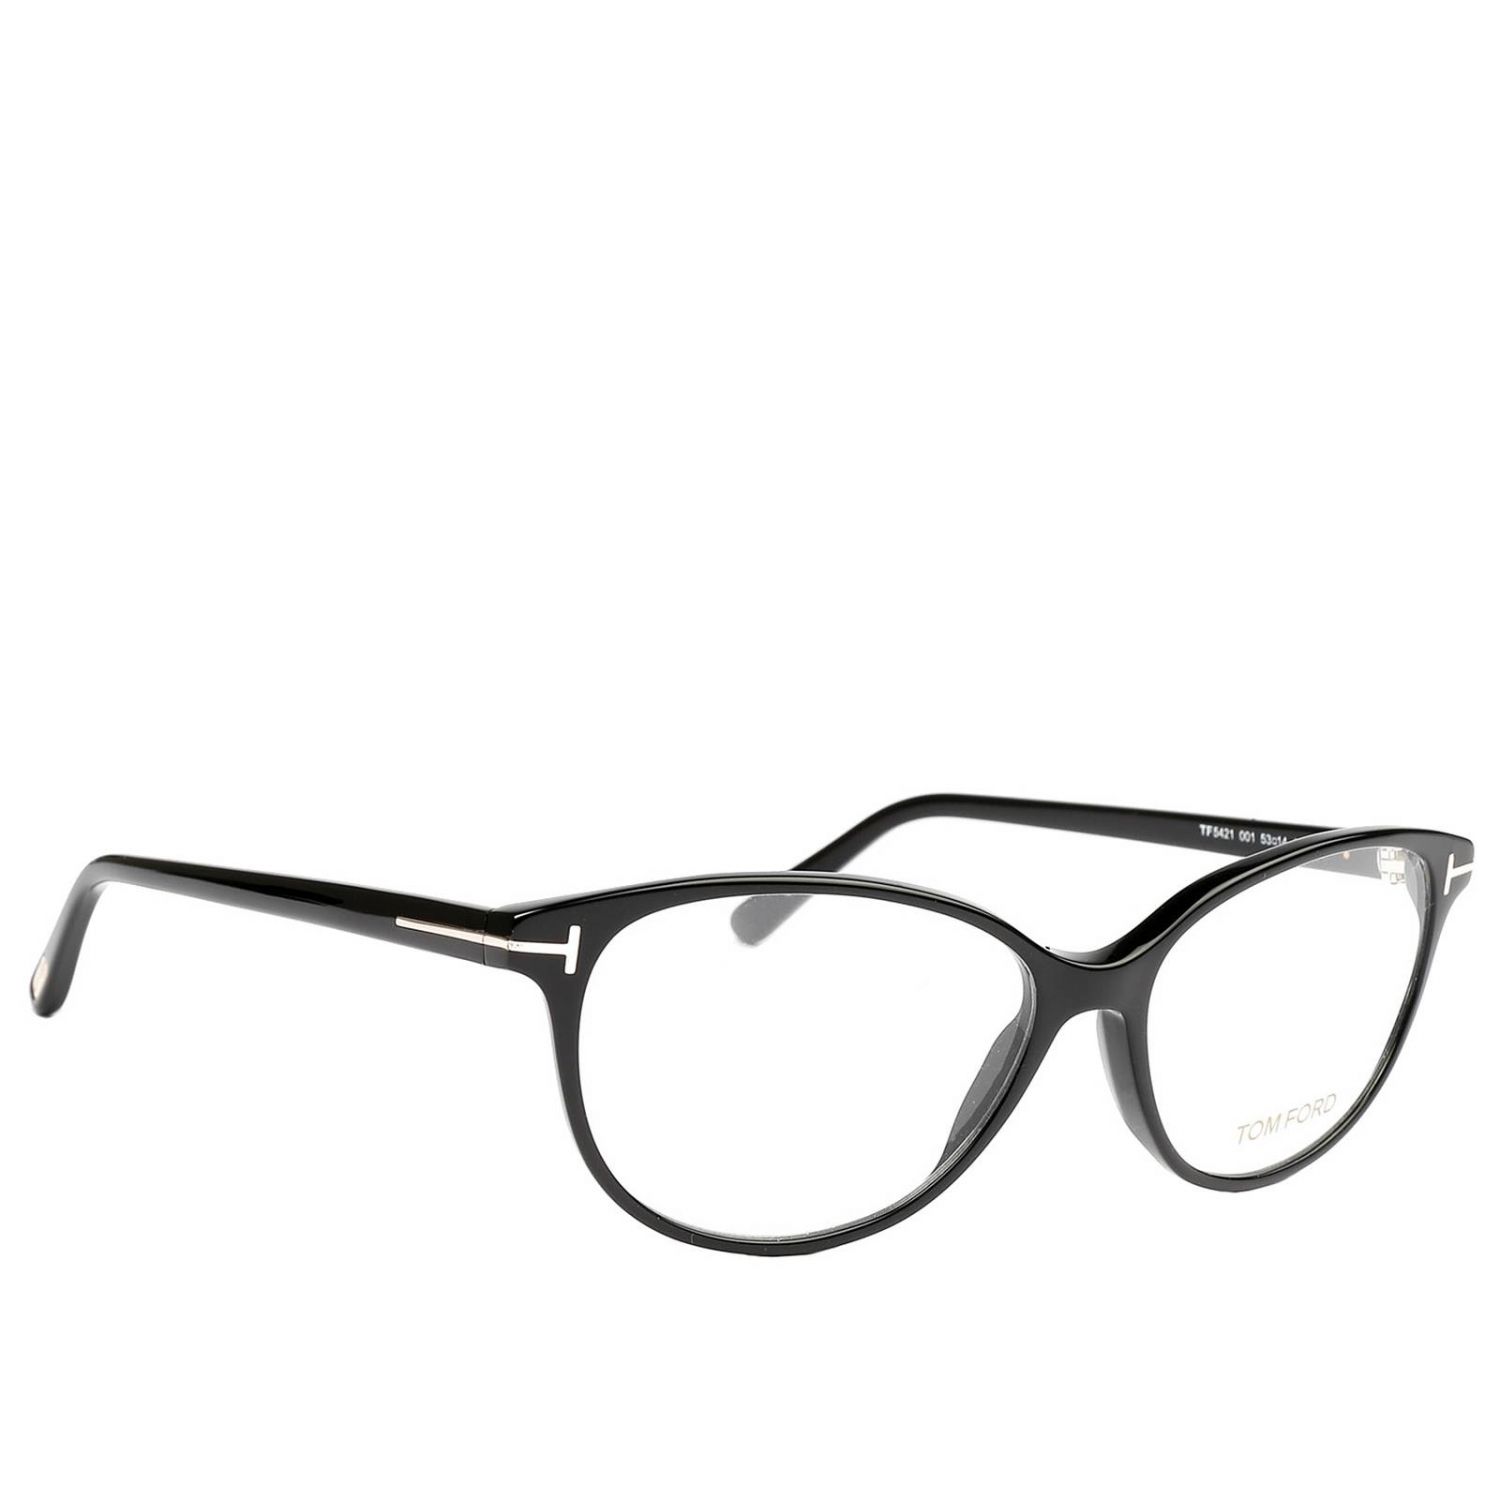 Tom Ford Outlet: Glasses women | Glasses Tom Ford Women Black | Glasses ...